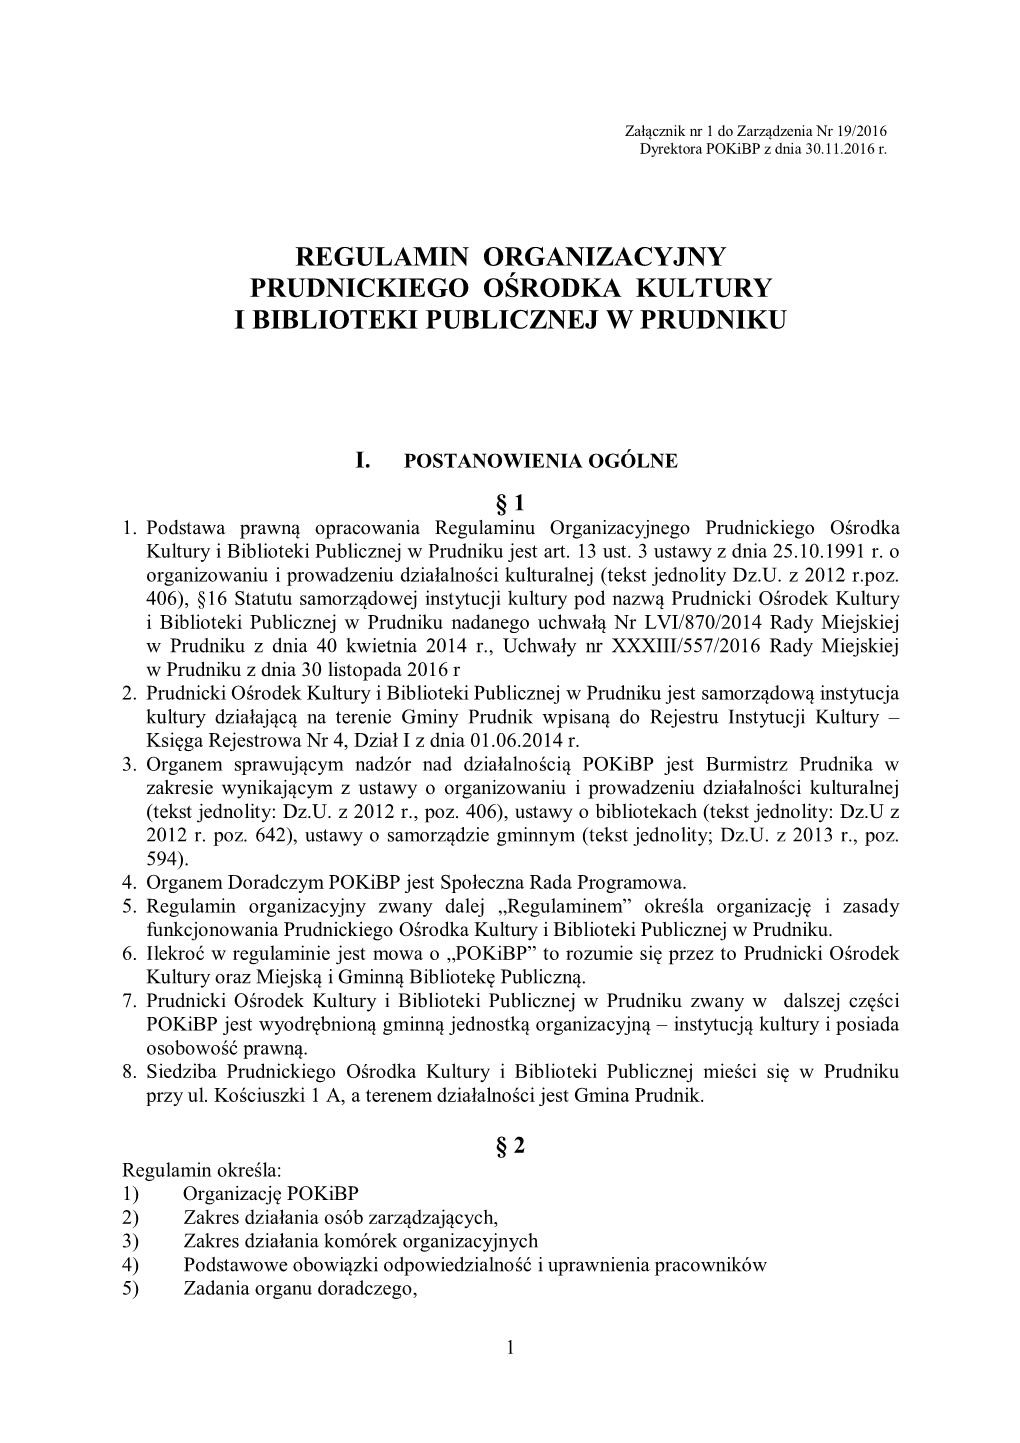 Regulamin Organizacyjny Prudnickiego Ośrodka Kultury I Biblioteki Publicznej W Prudniku